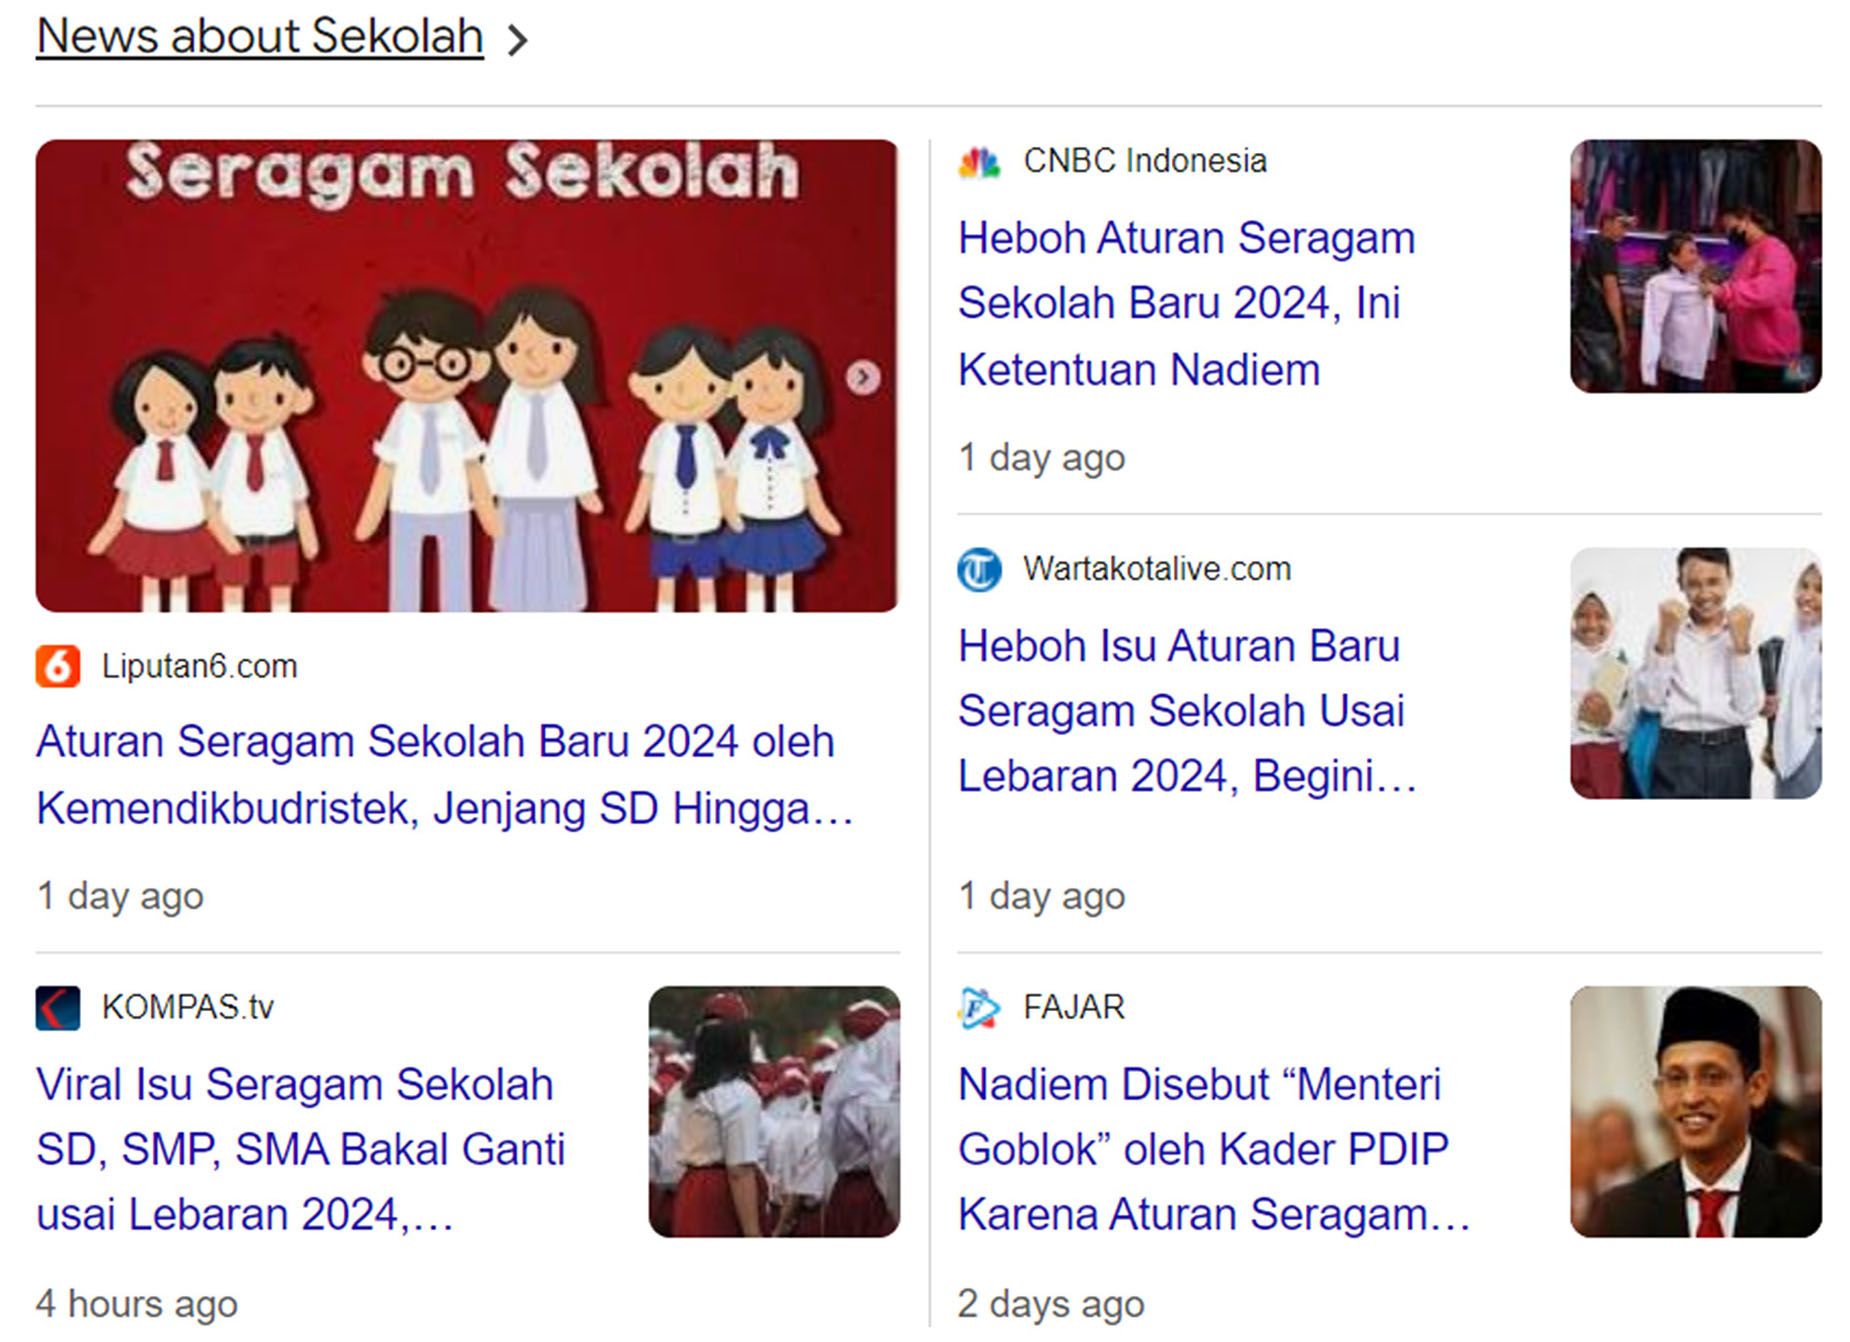 Tangkapan layar di Google mengenai berita penggantian seragam sekolah.  